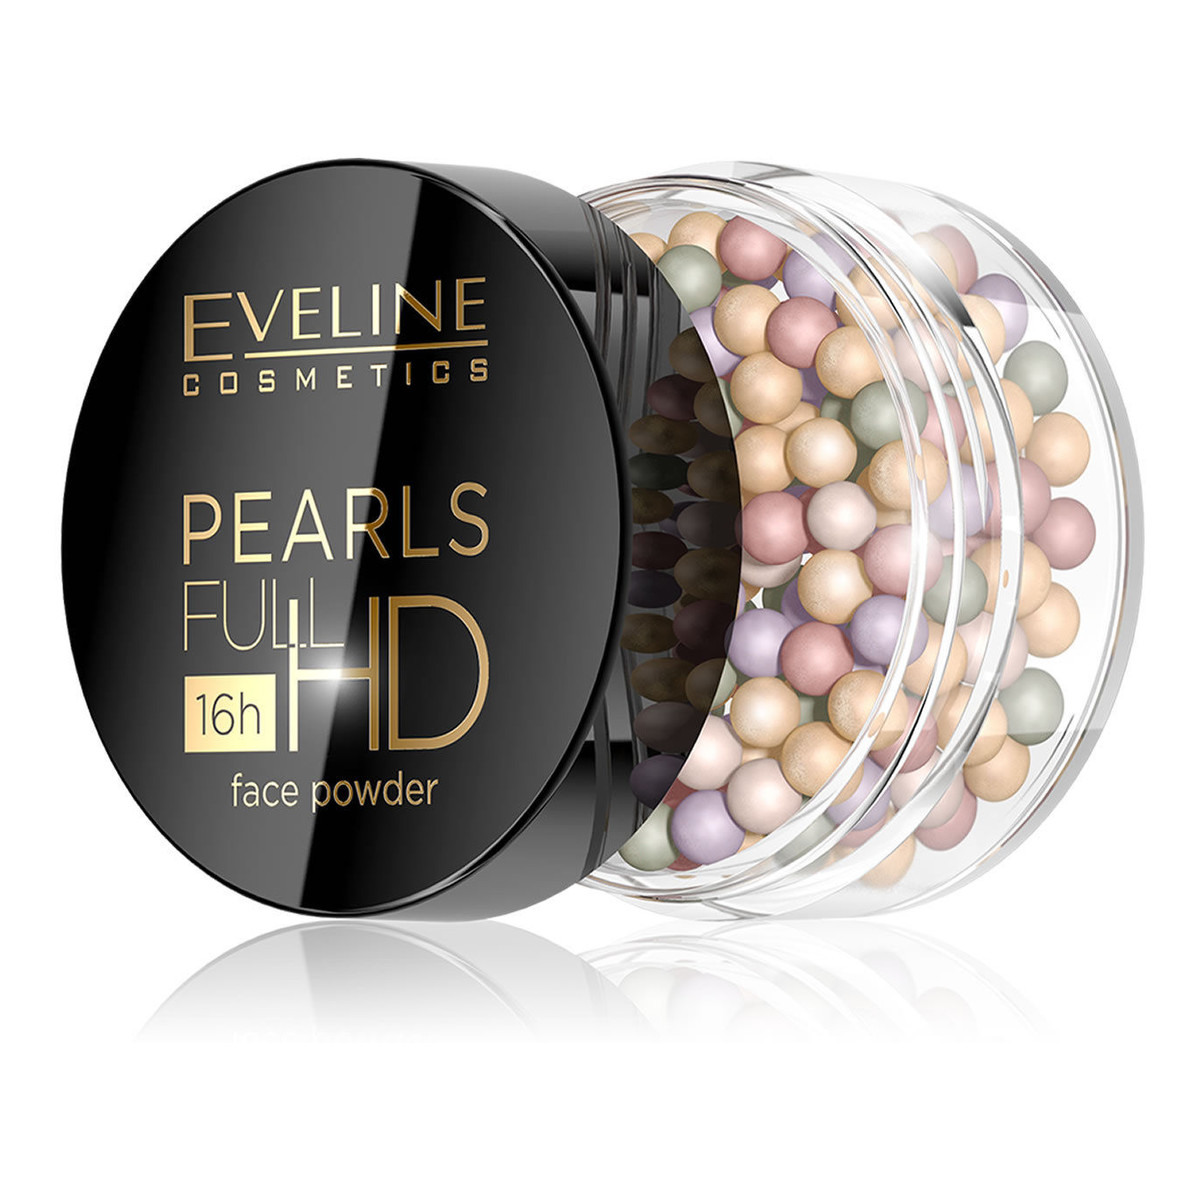 Eveline Pearls Full HD Puder Wyrównujący Koloryt W Perełkach Do Twarzy 15g